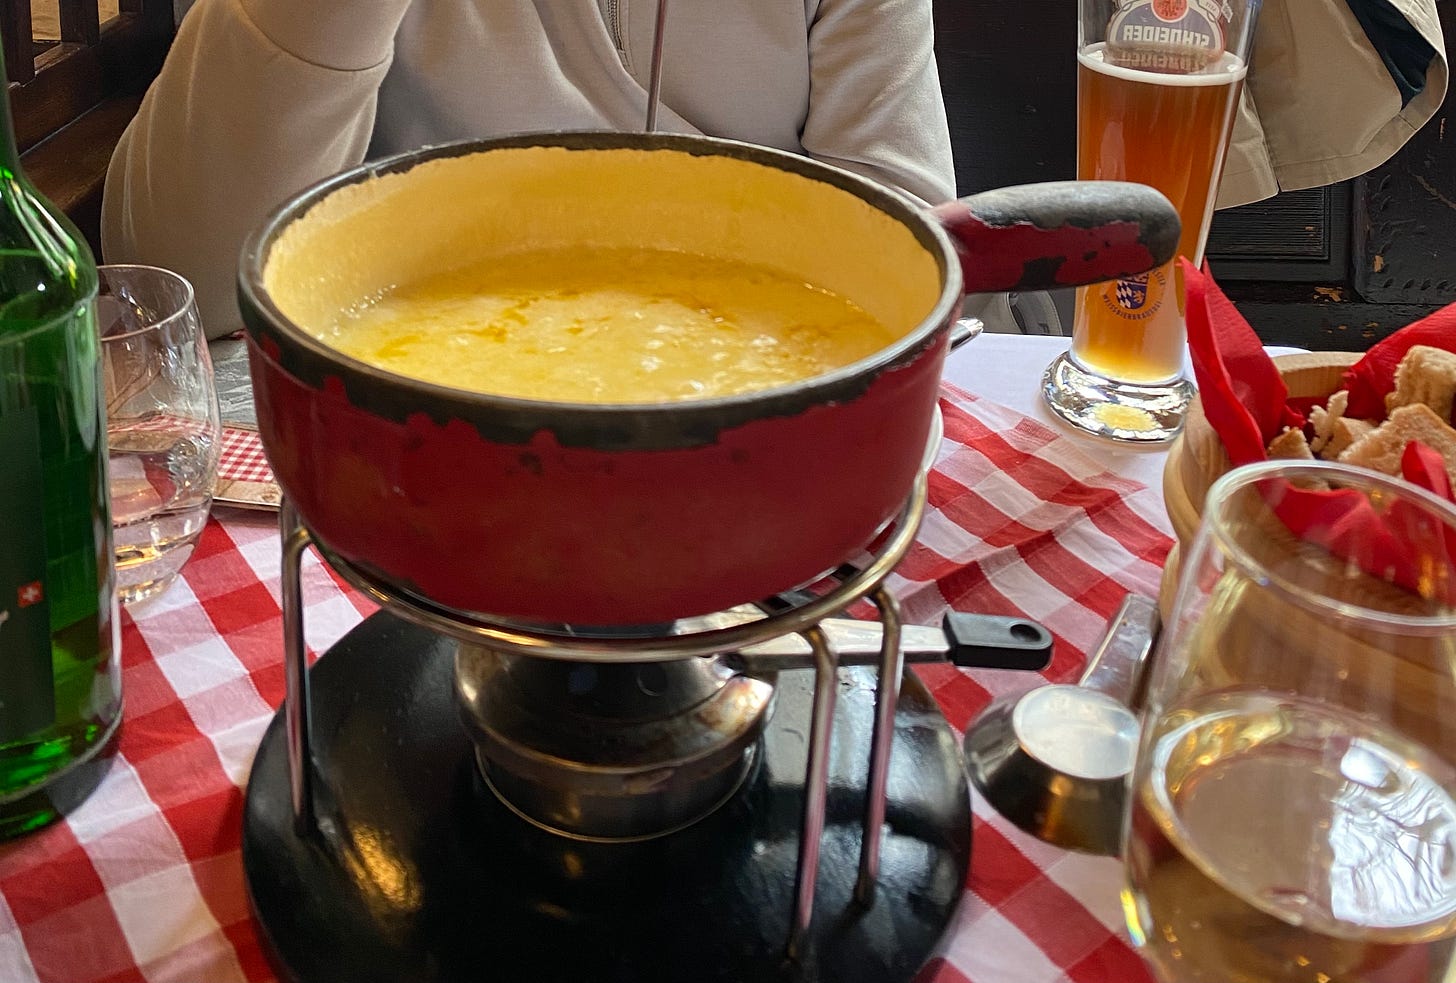 A pot of cheese (fondue)